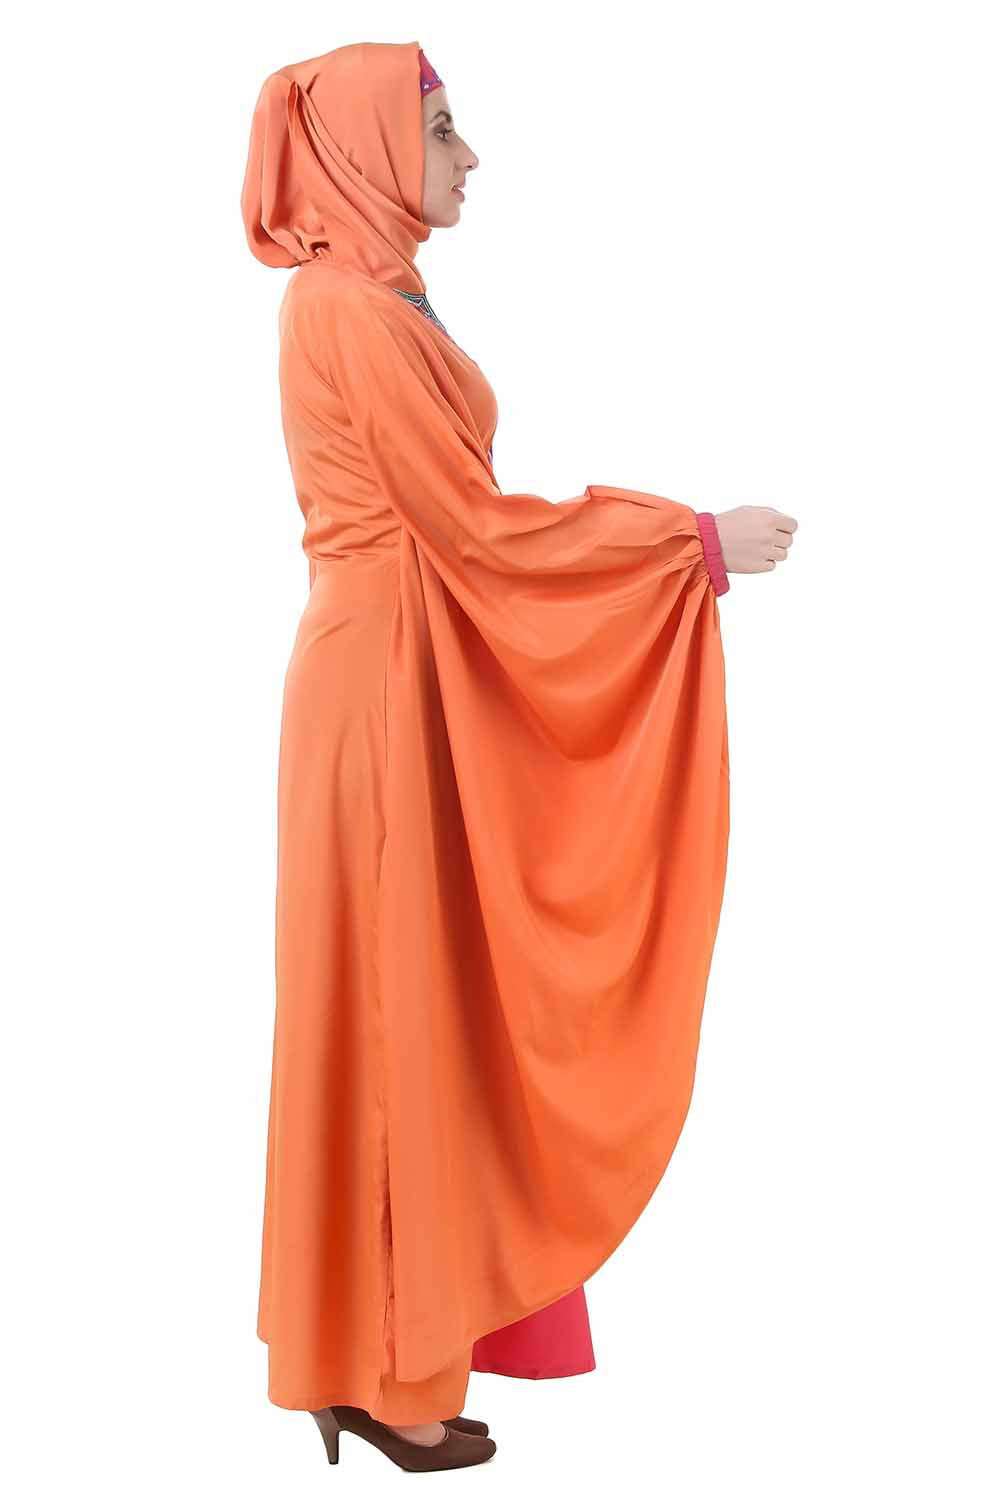 Orange Batwing Style Crepe Abaya Side